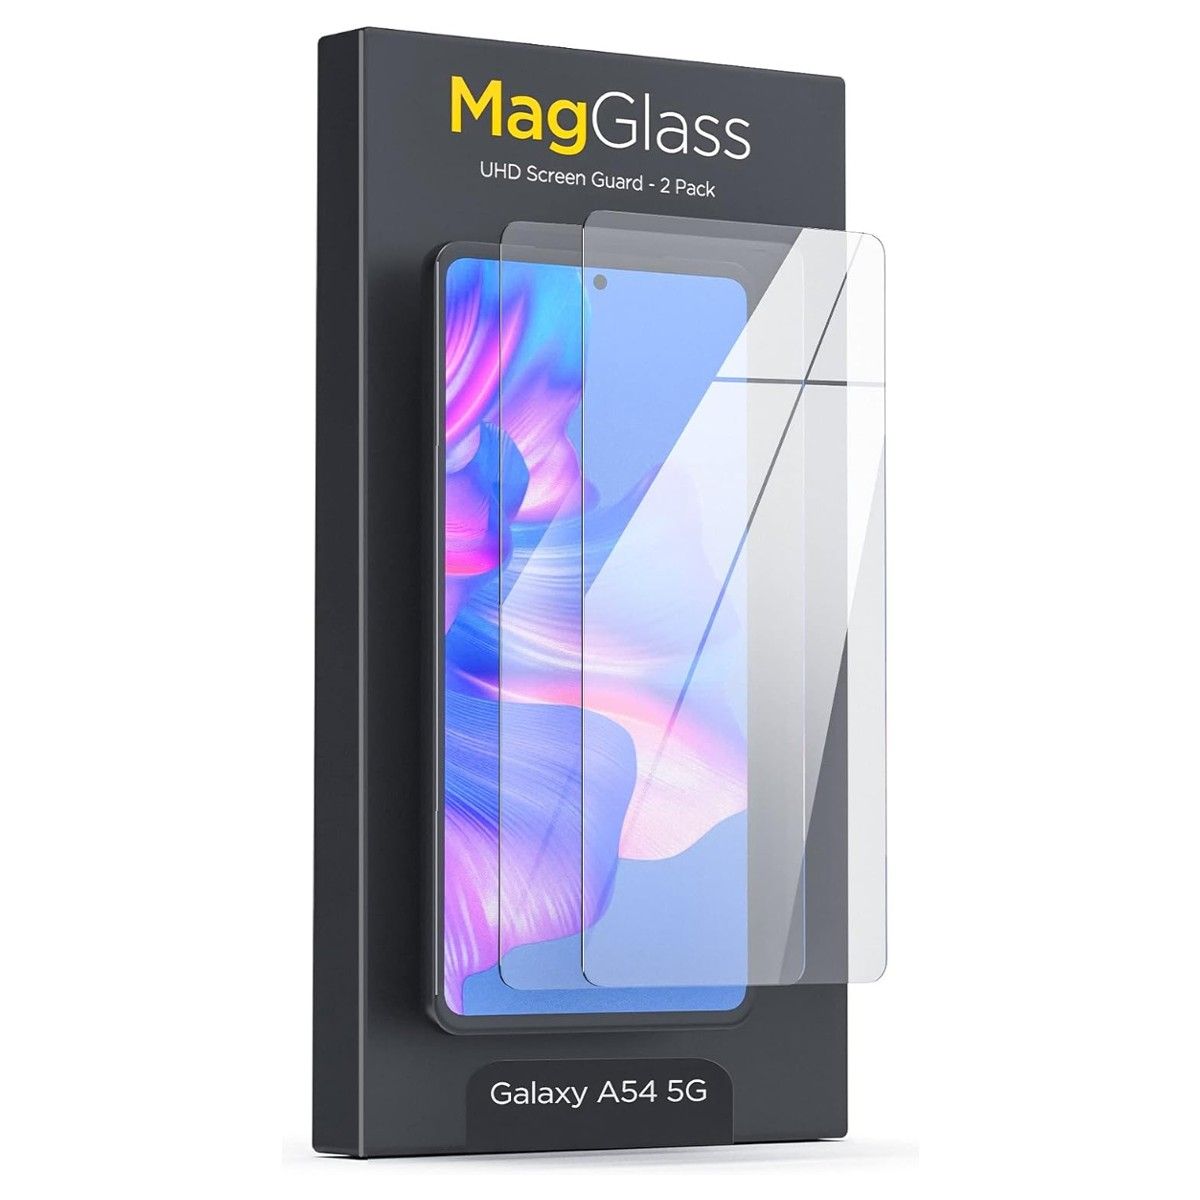 Uma caixa de varejo de um protetor de tela MagGlass para o Galaxy A54 em um fundo branco